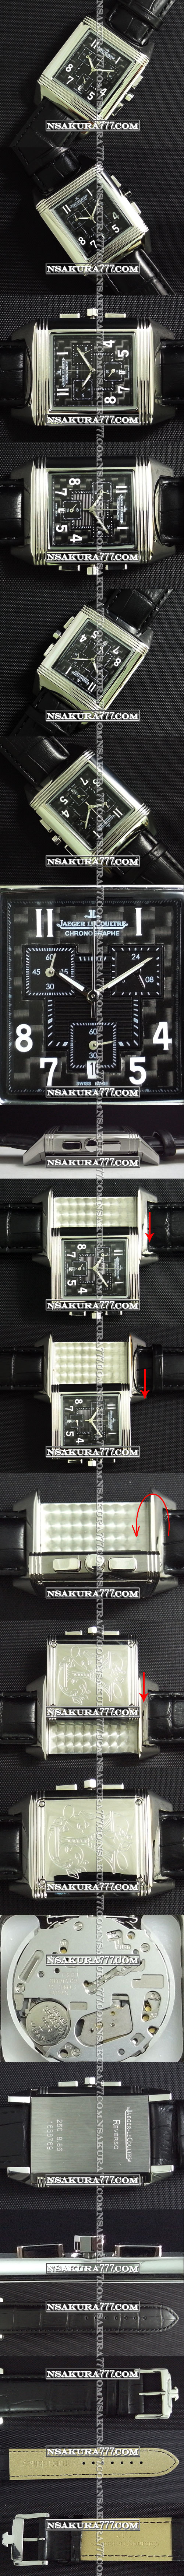 レプリカ時計ジャガールクルト レベルソ グランデ クオーツムーブメント搭載 - ウインドウを閉じる